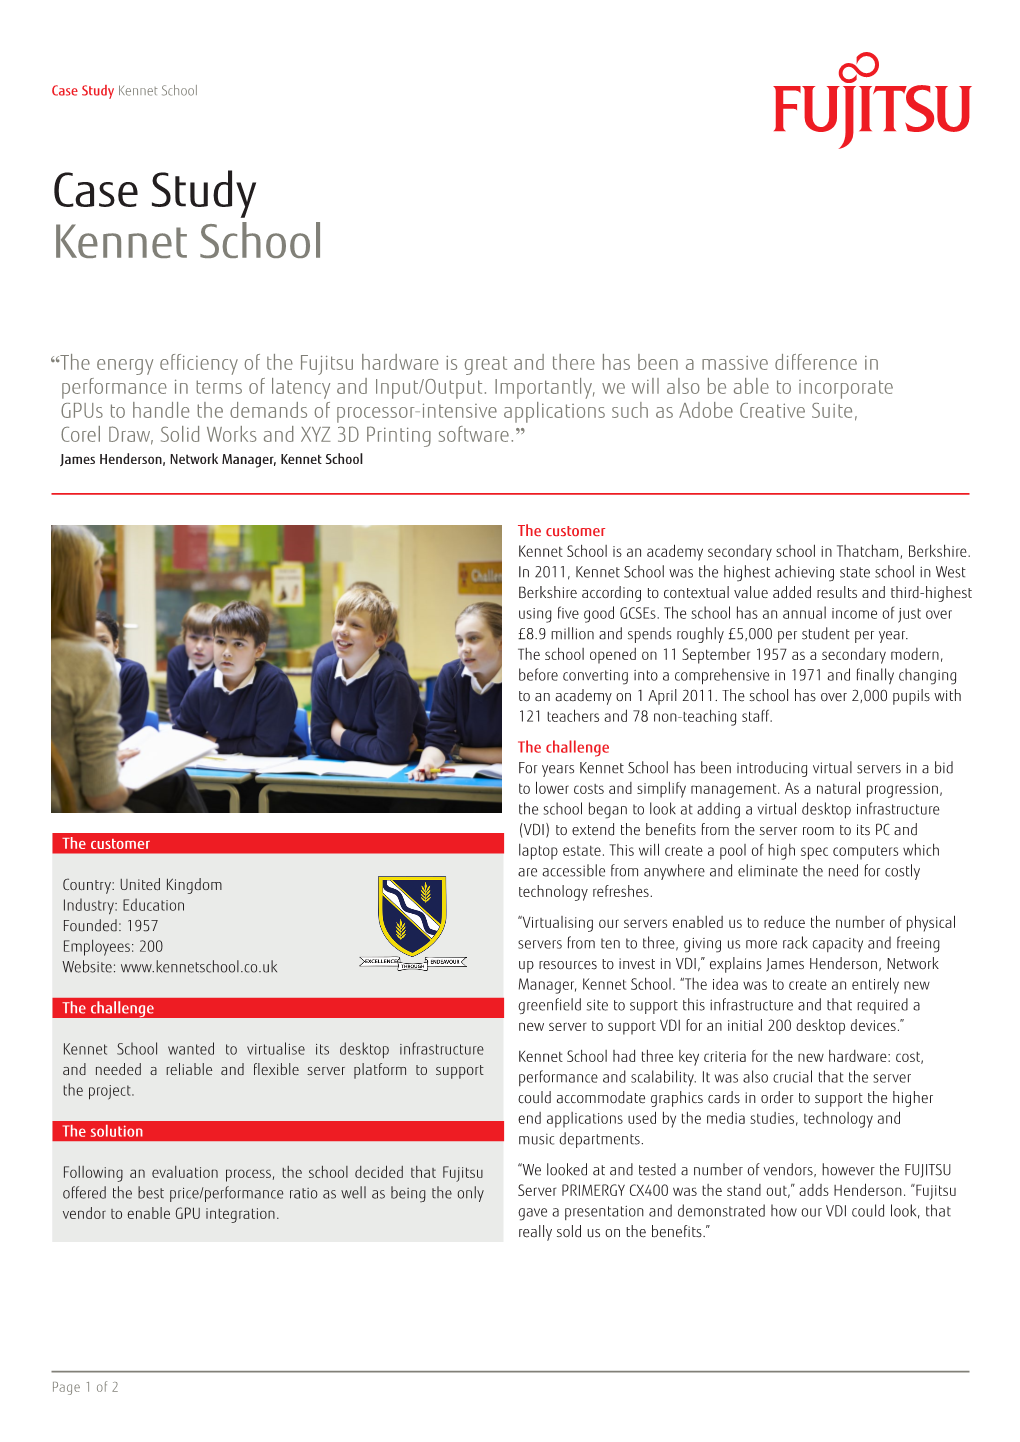 Kennet School